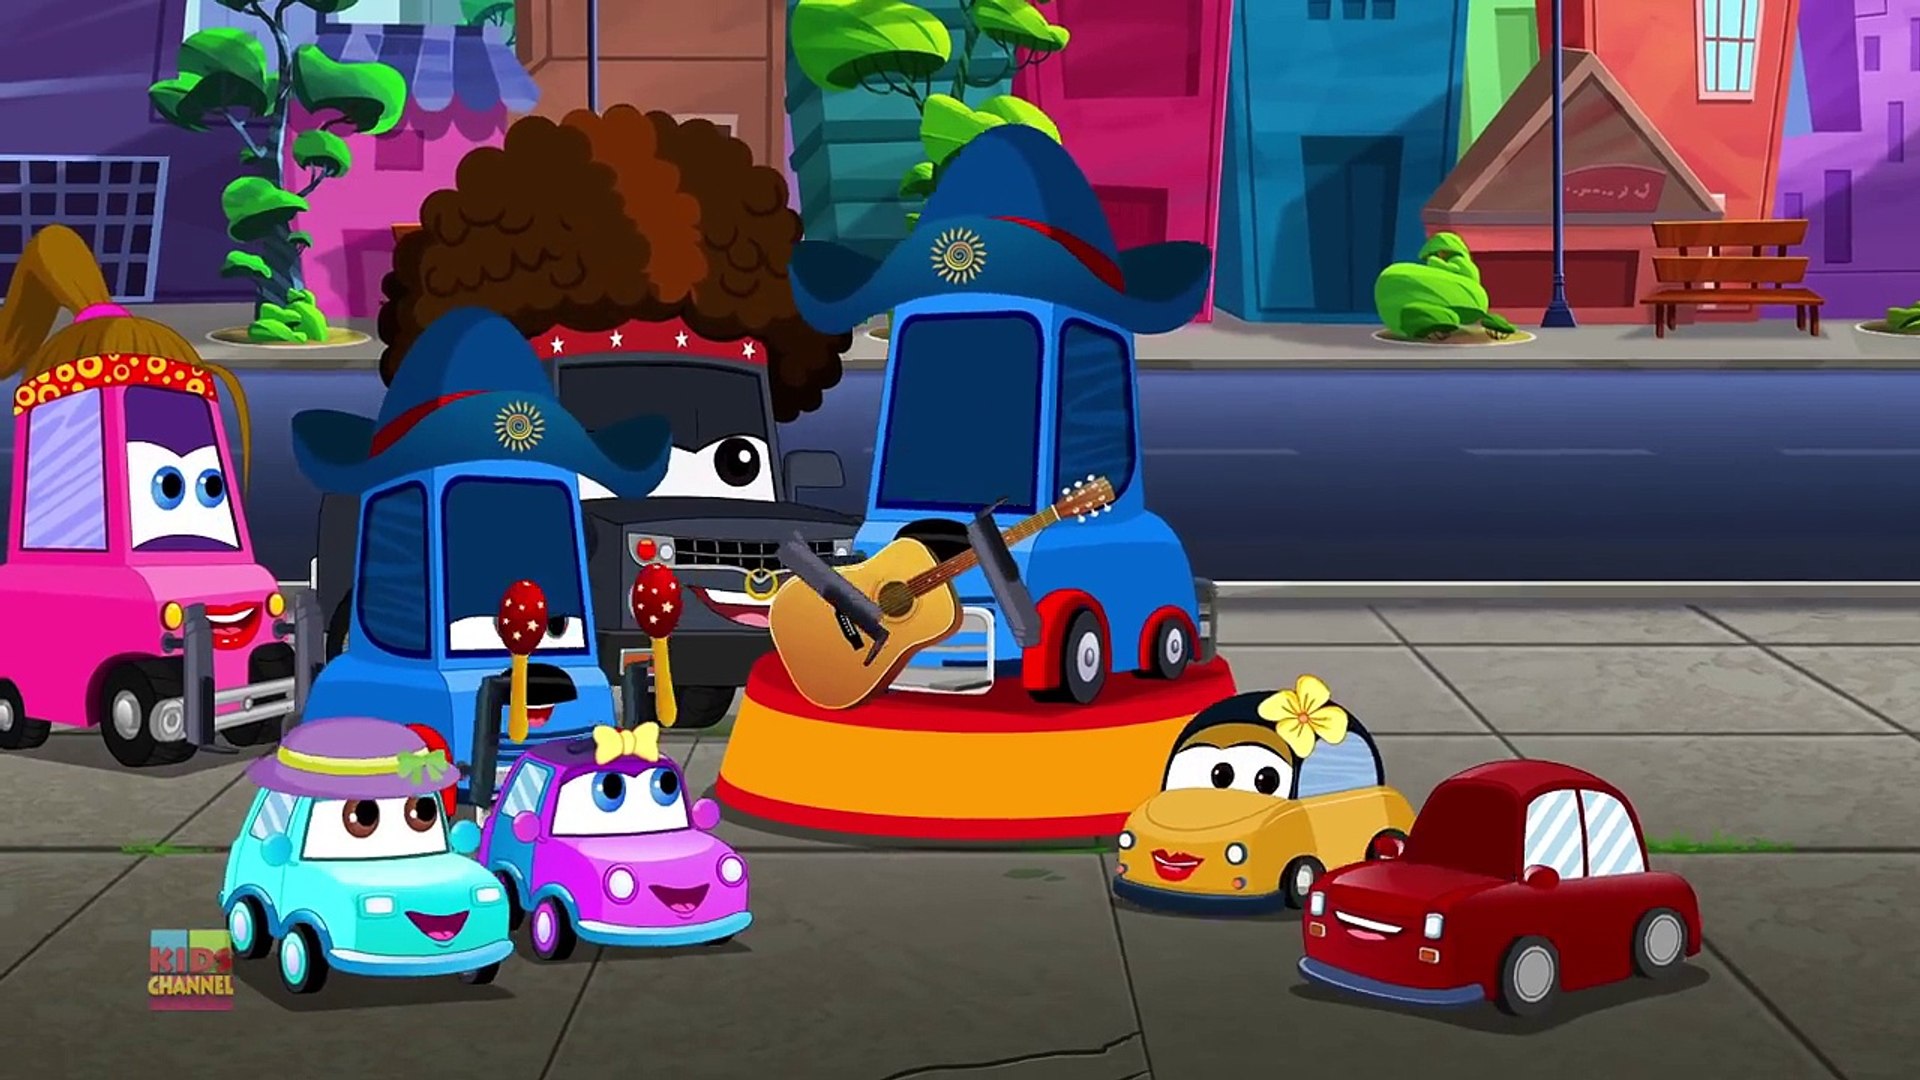 Super Truck - The Best of MONSTER TRUCK cartoons - Car City - Truck Cartoons  for kids 